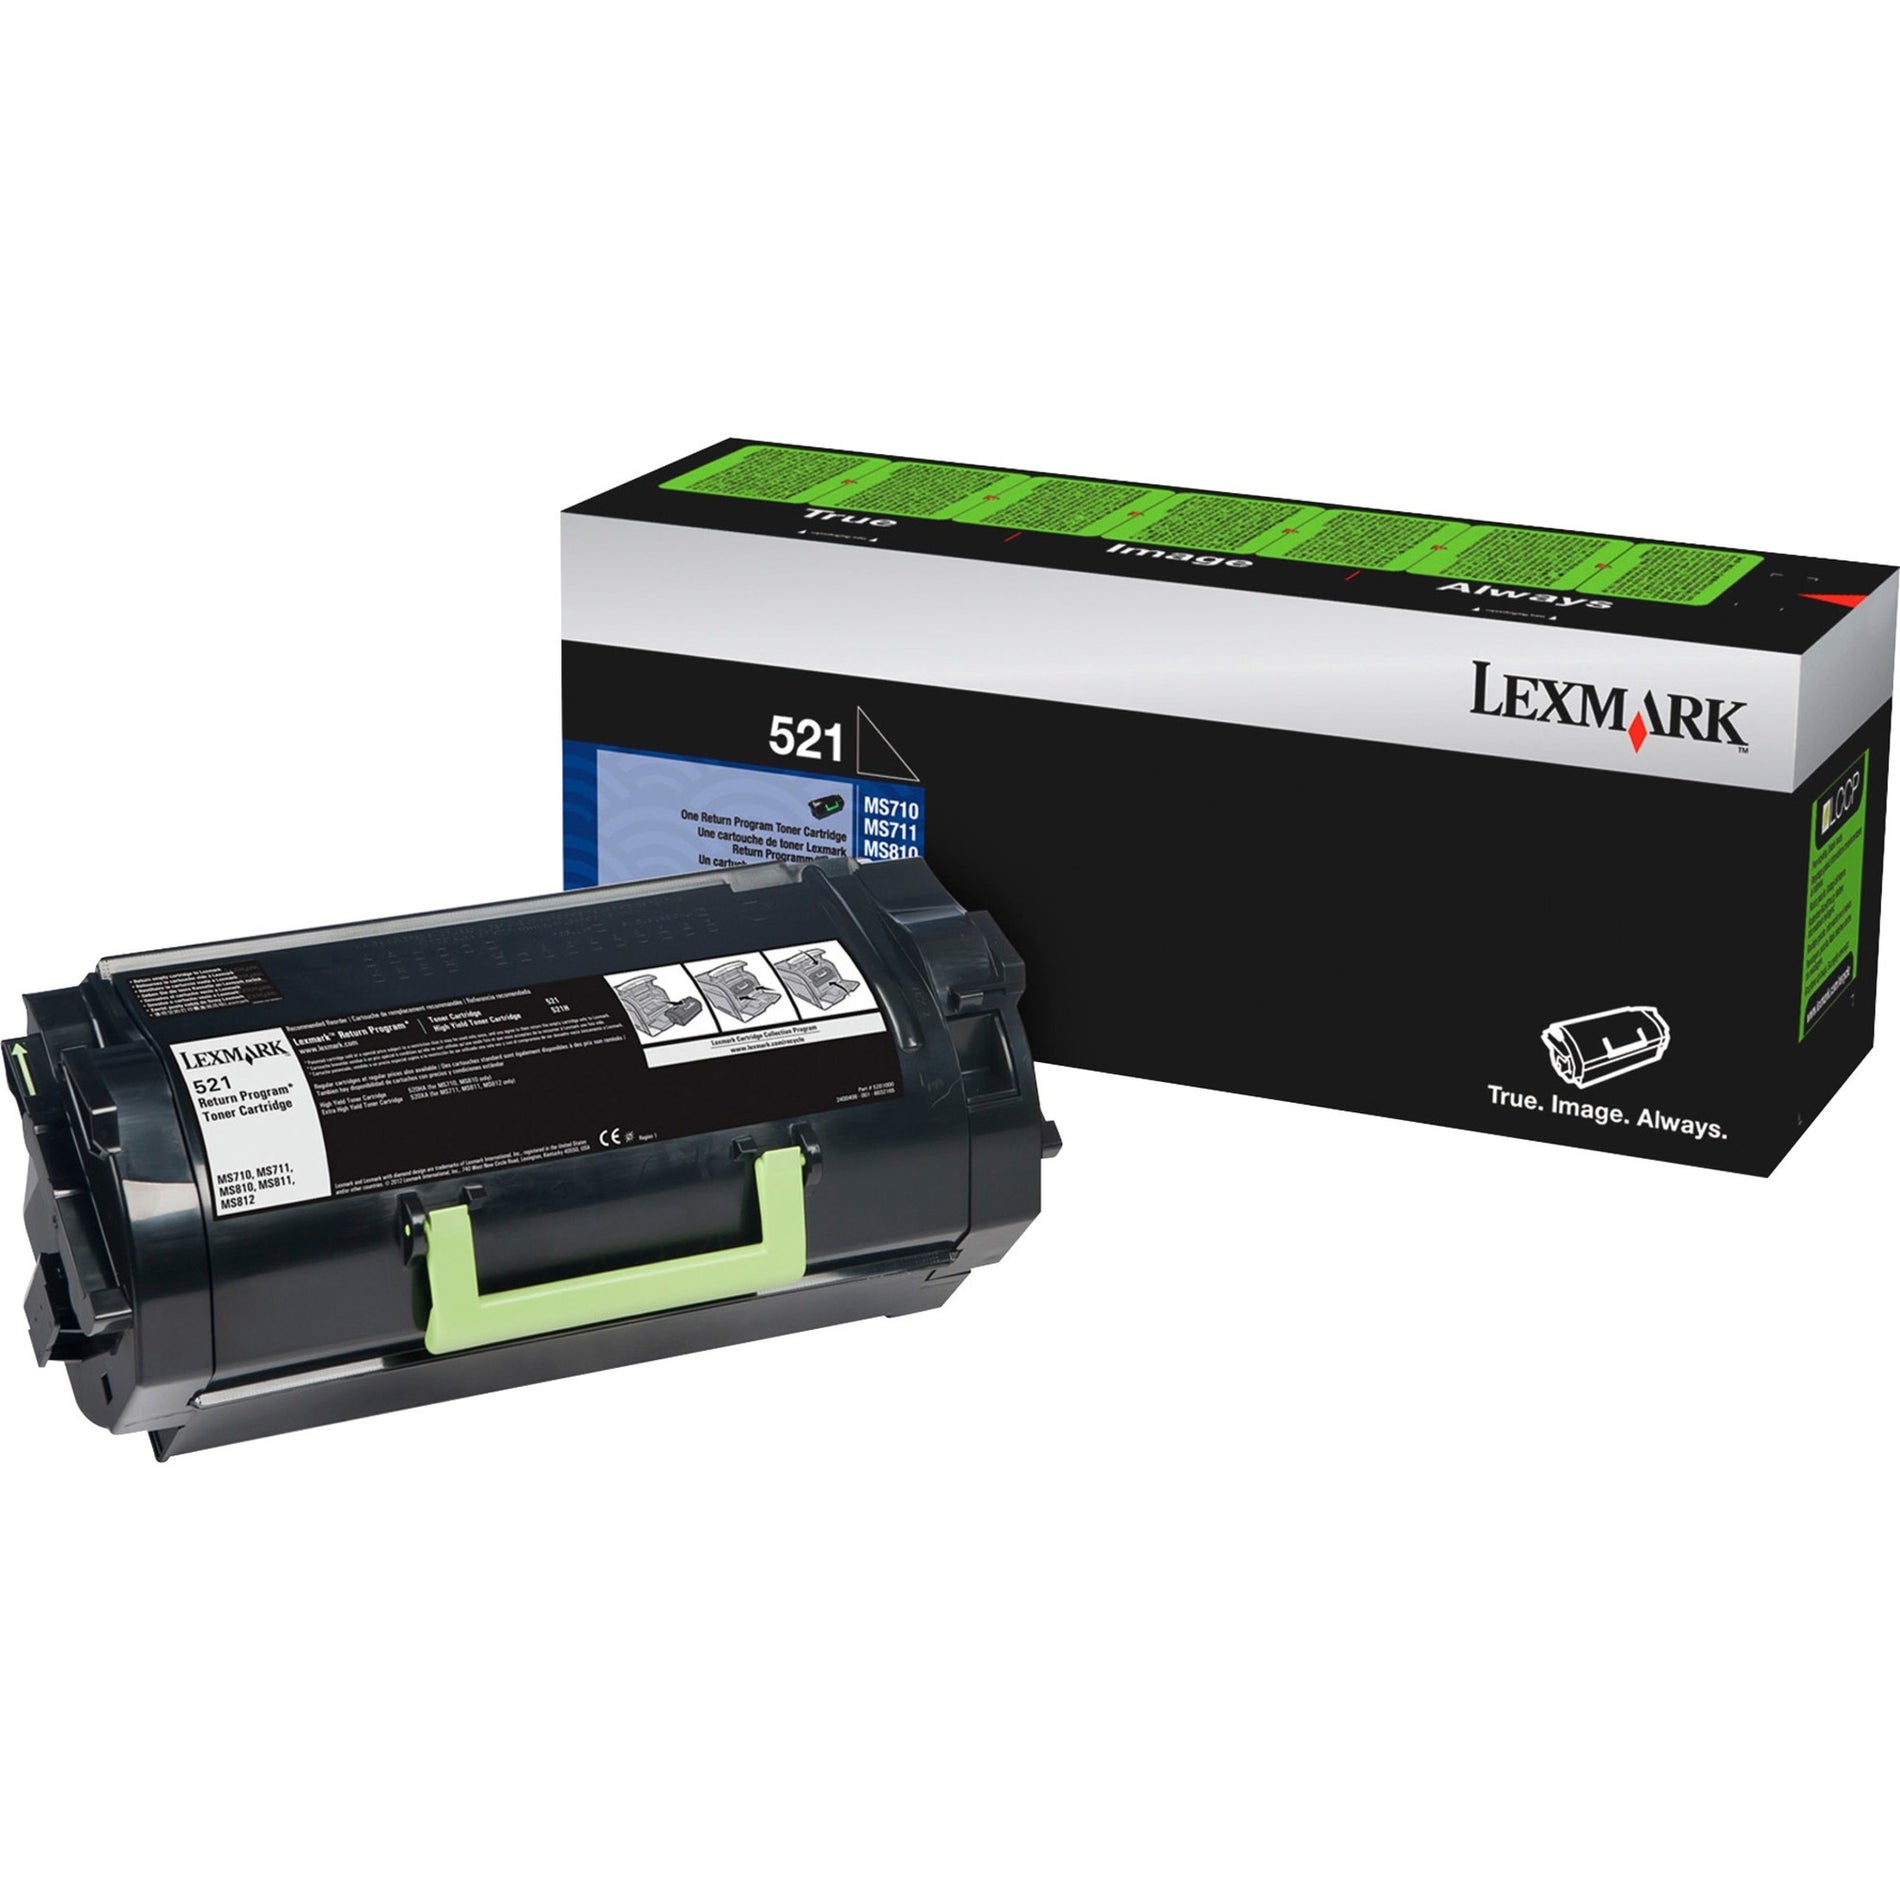 Lexmark 52D1000 Unison 521 Toner Cartridge, Standard Yield, Black